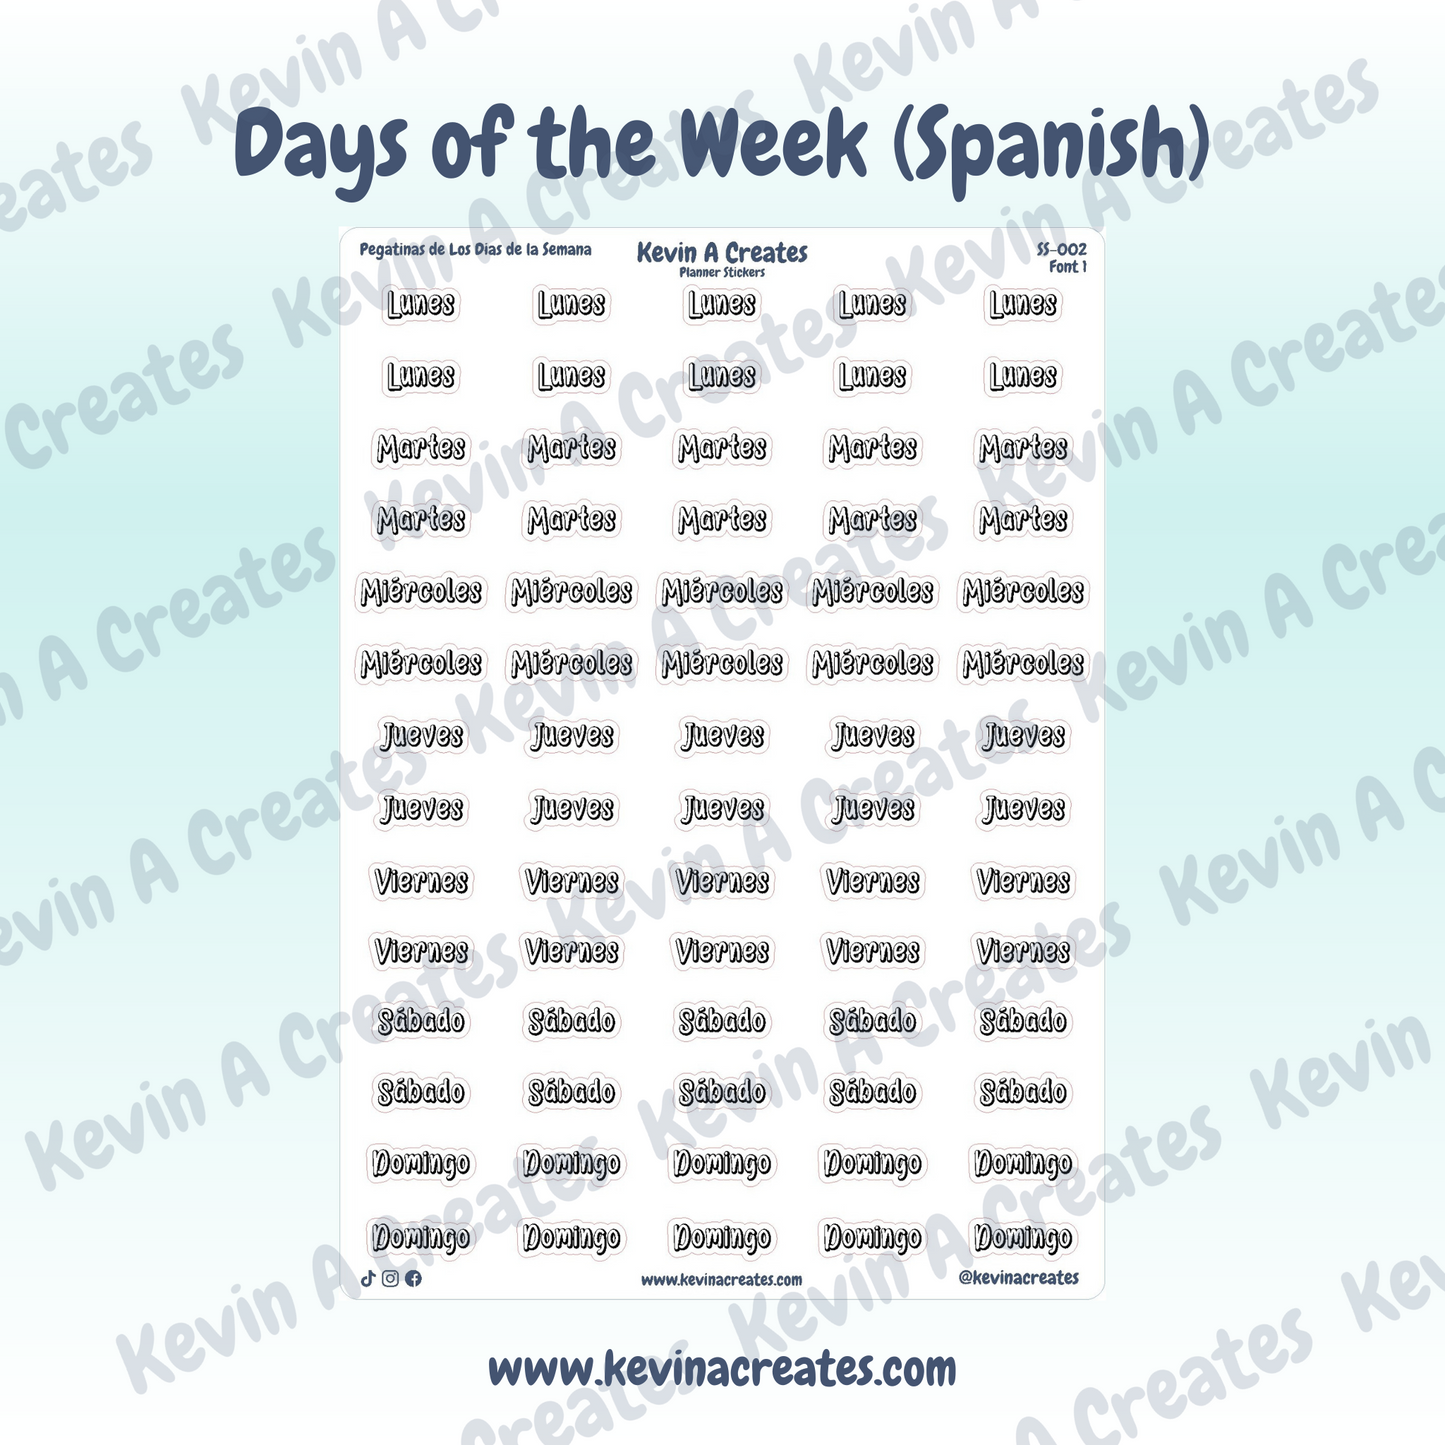 Days of the Week (Spanish) - Pegatinas de los Dias de la Semana